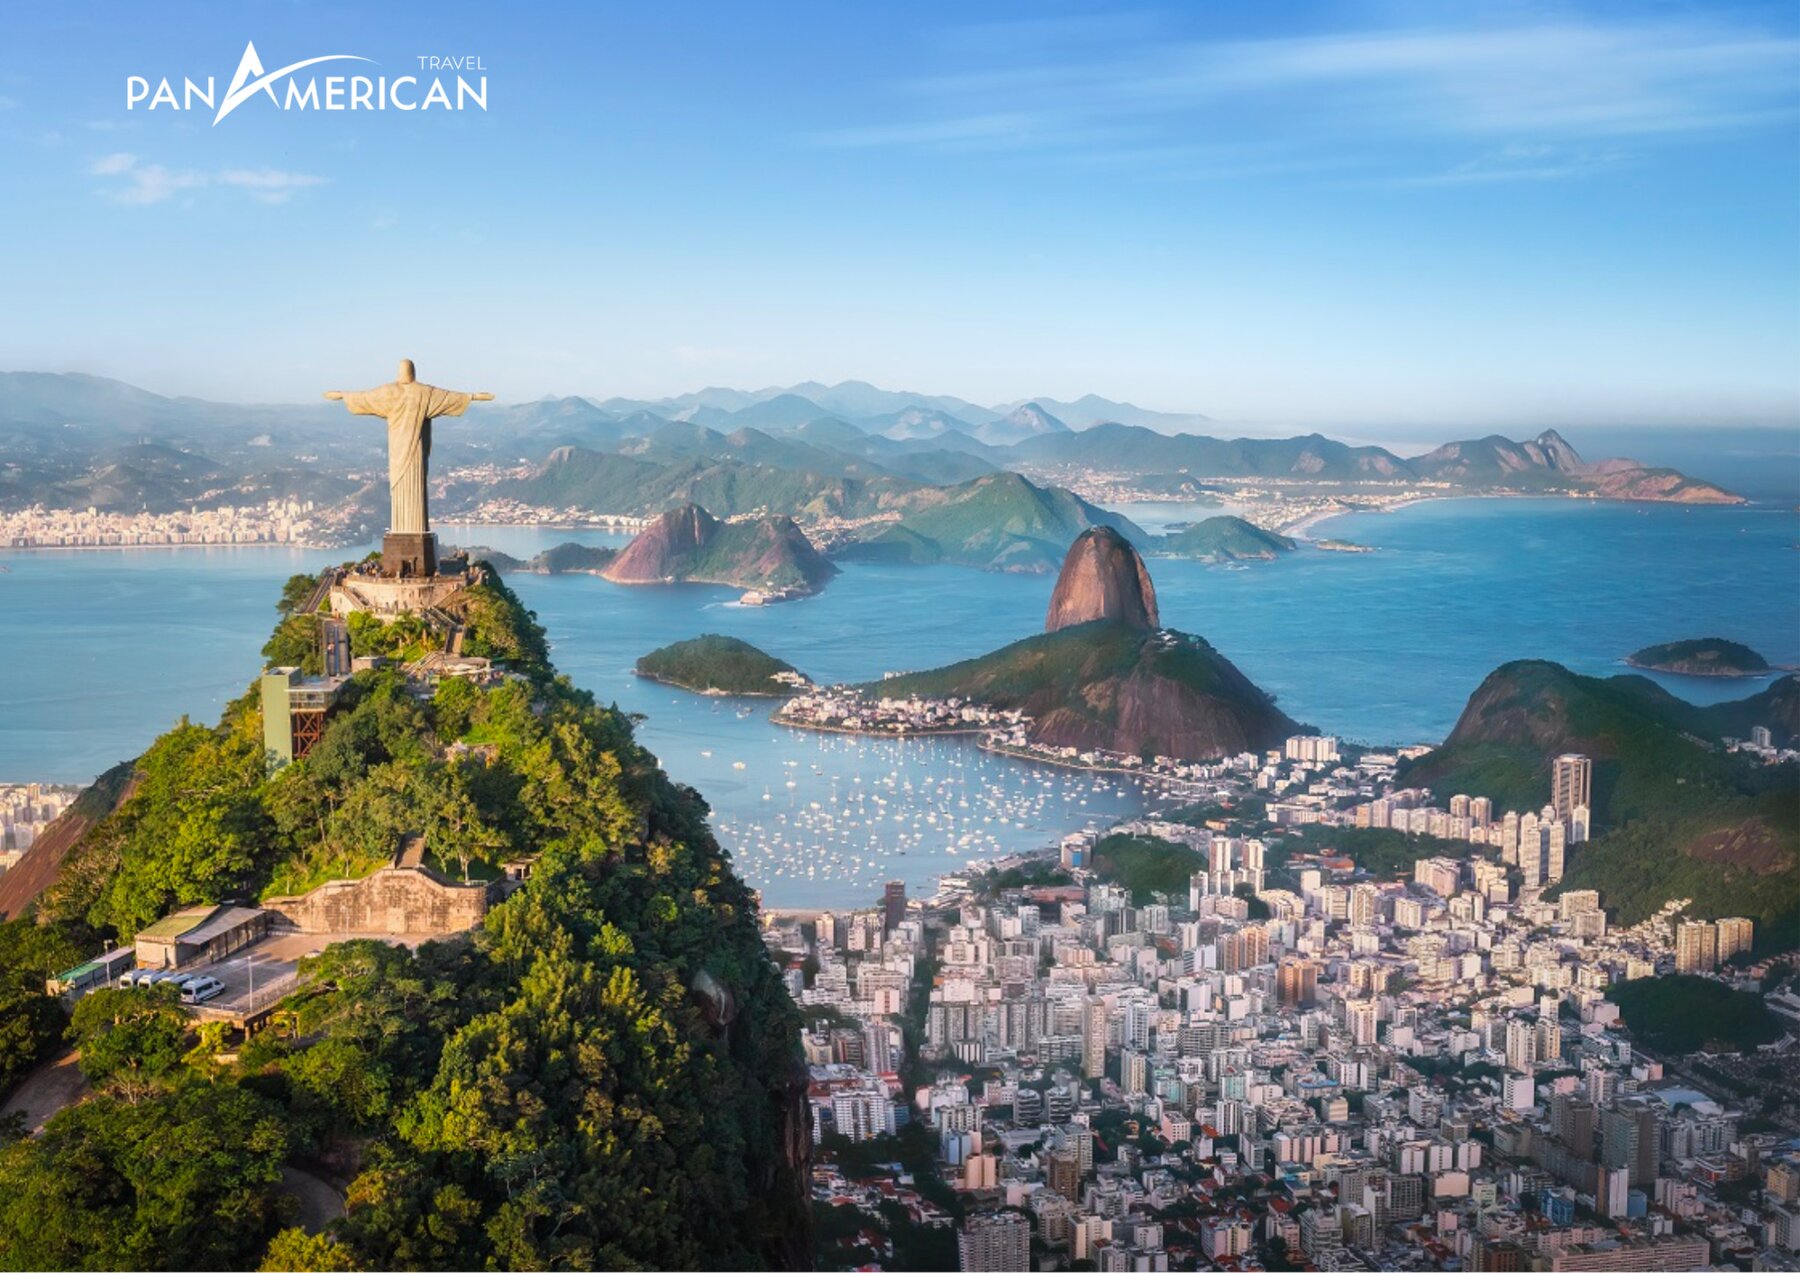 Núi Corcovado một trong những biểu tượng của thành phố